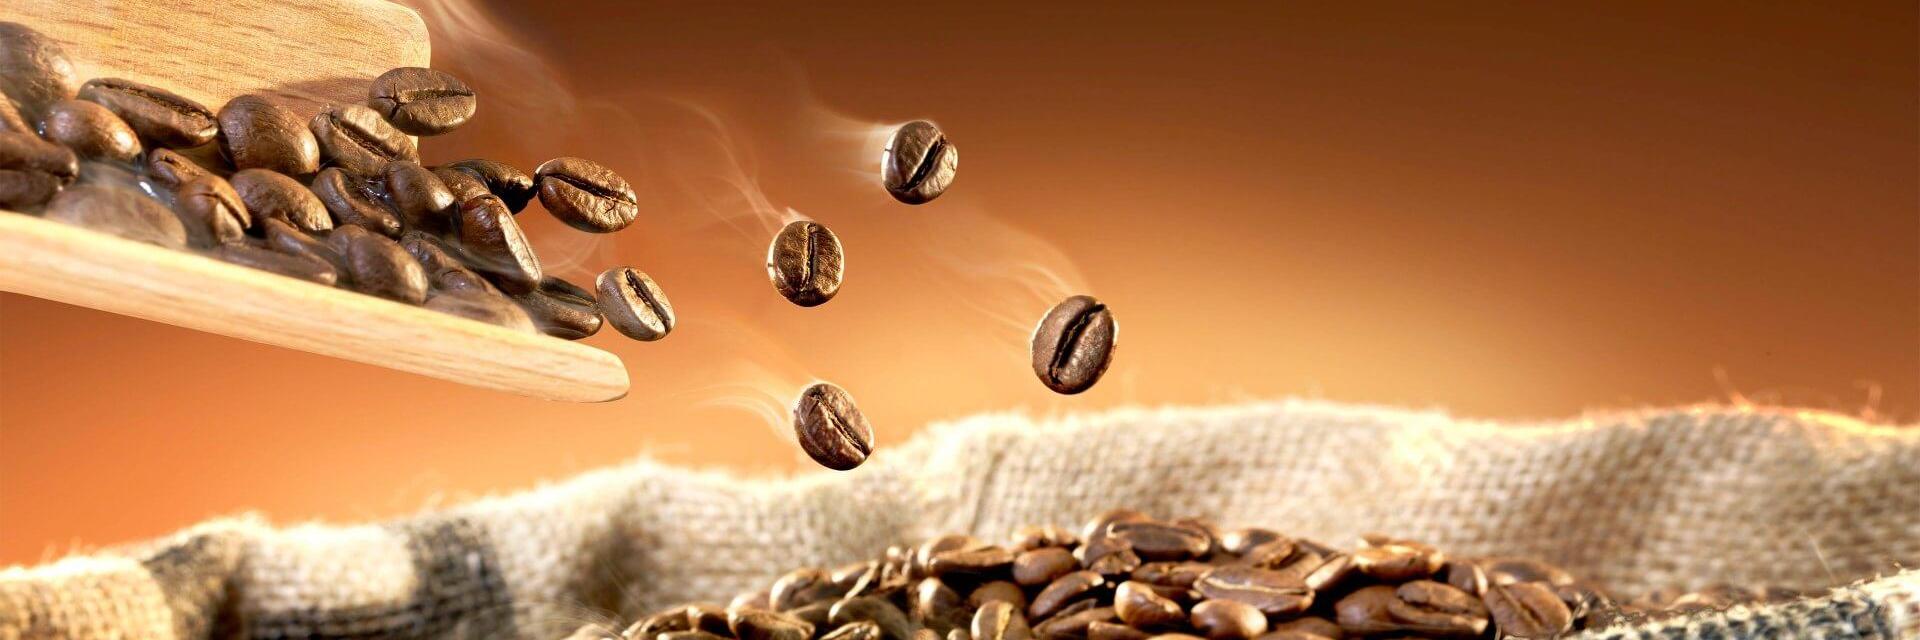 Bohnenkaffee